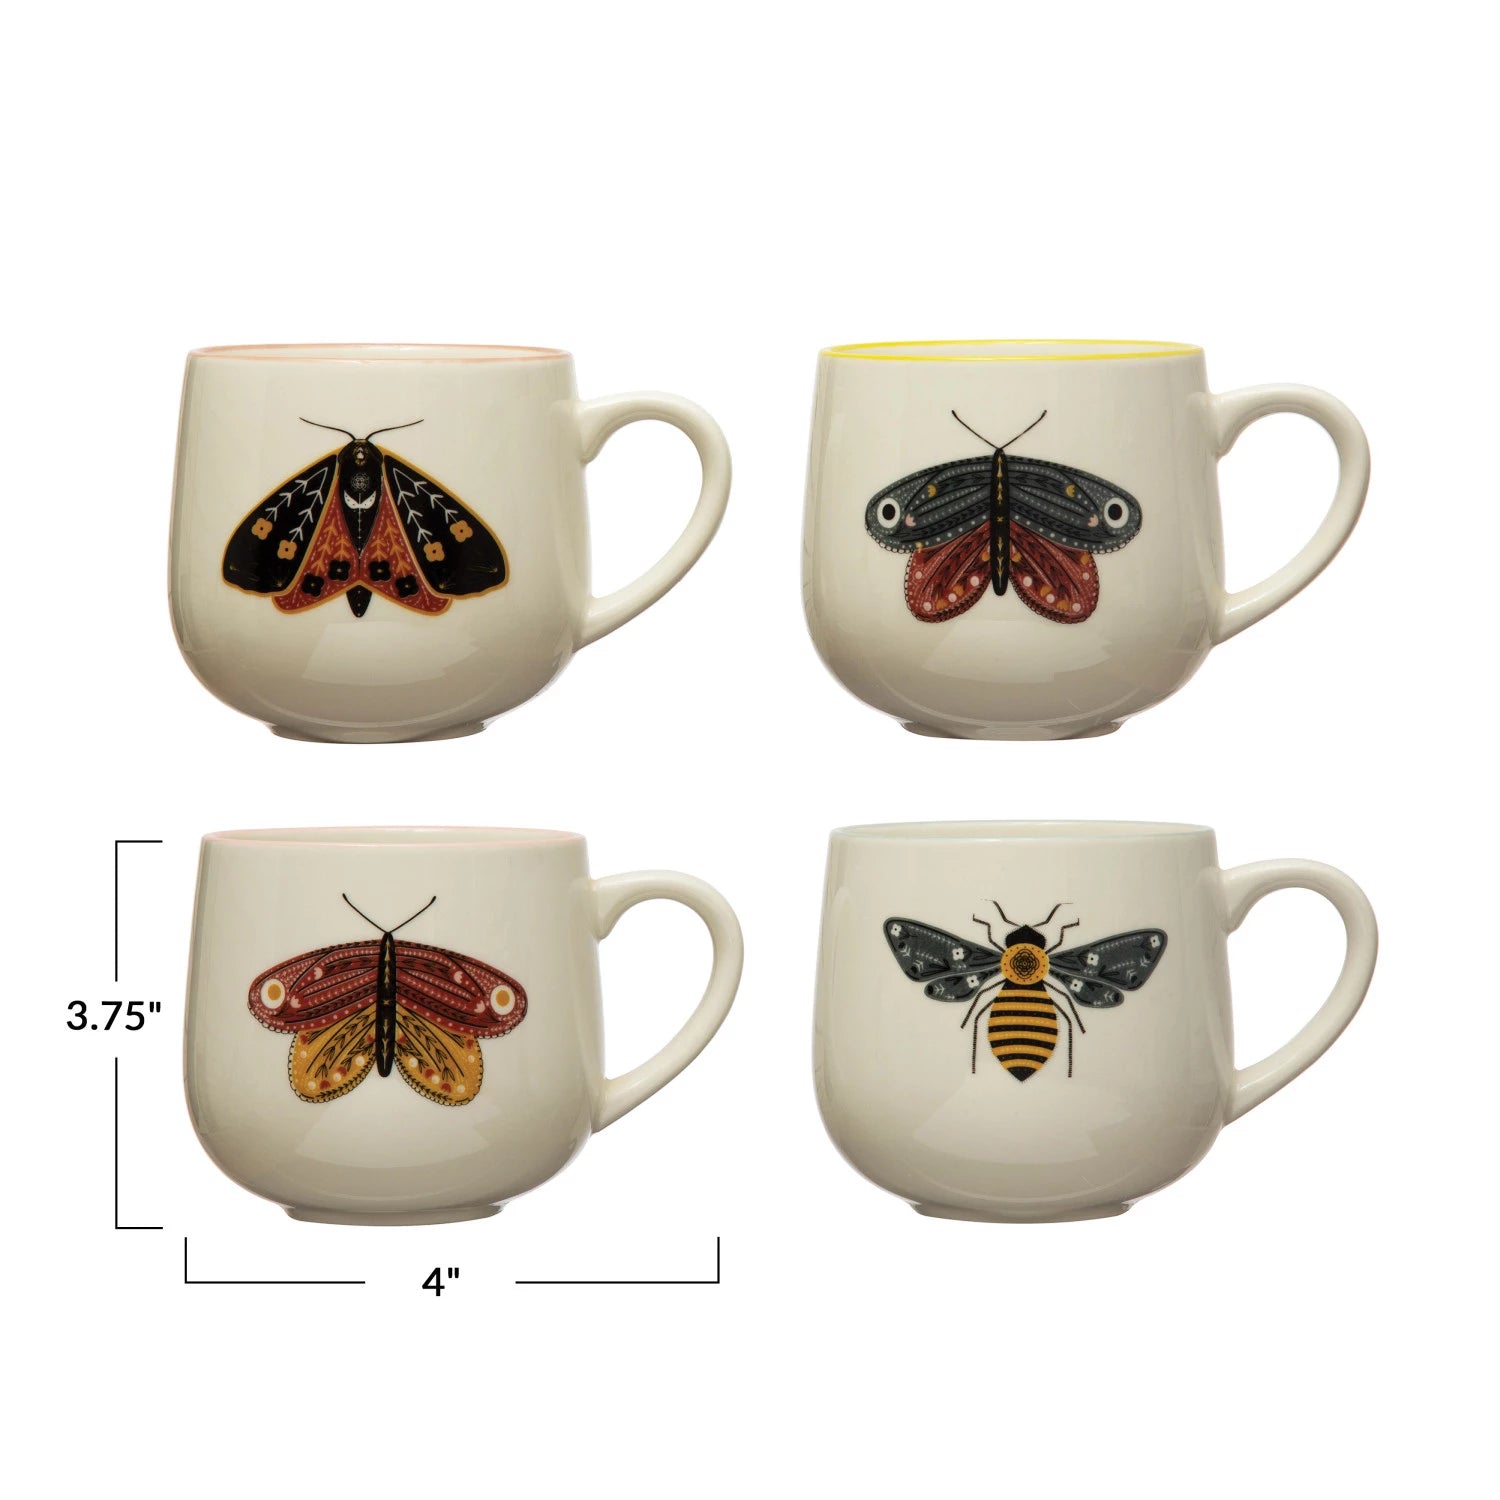 12 oz. Stoneware Mug w/ Insect & Colored Rim